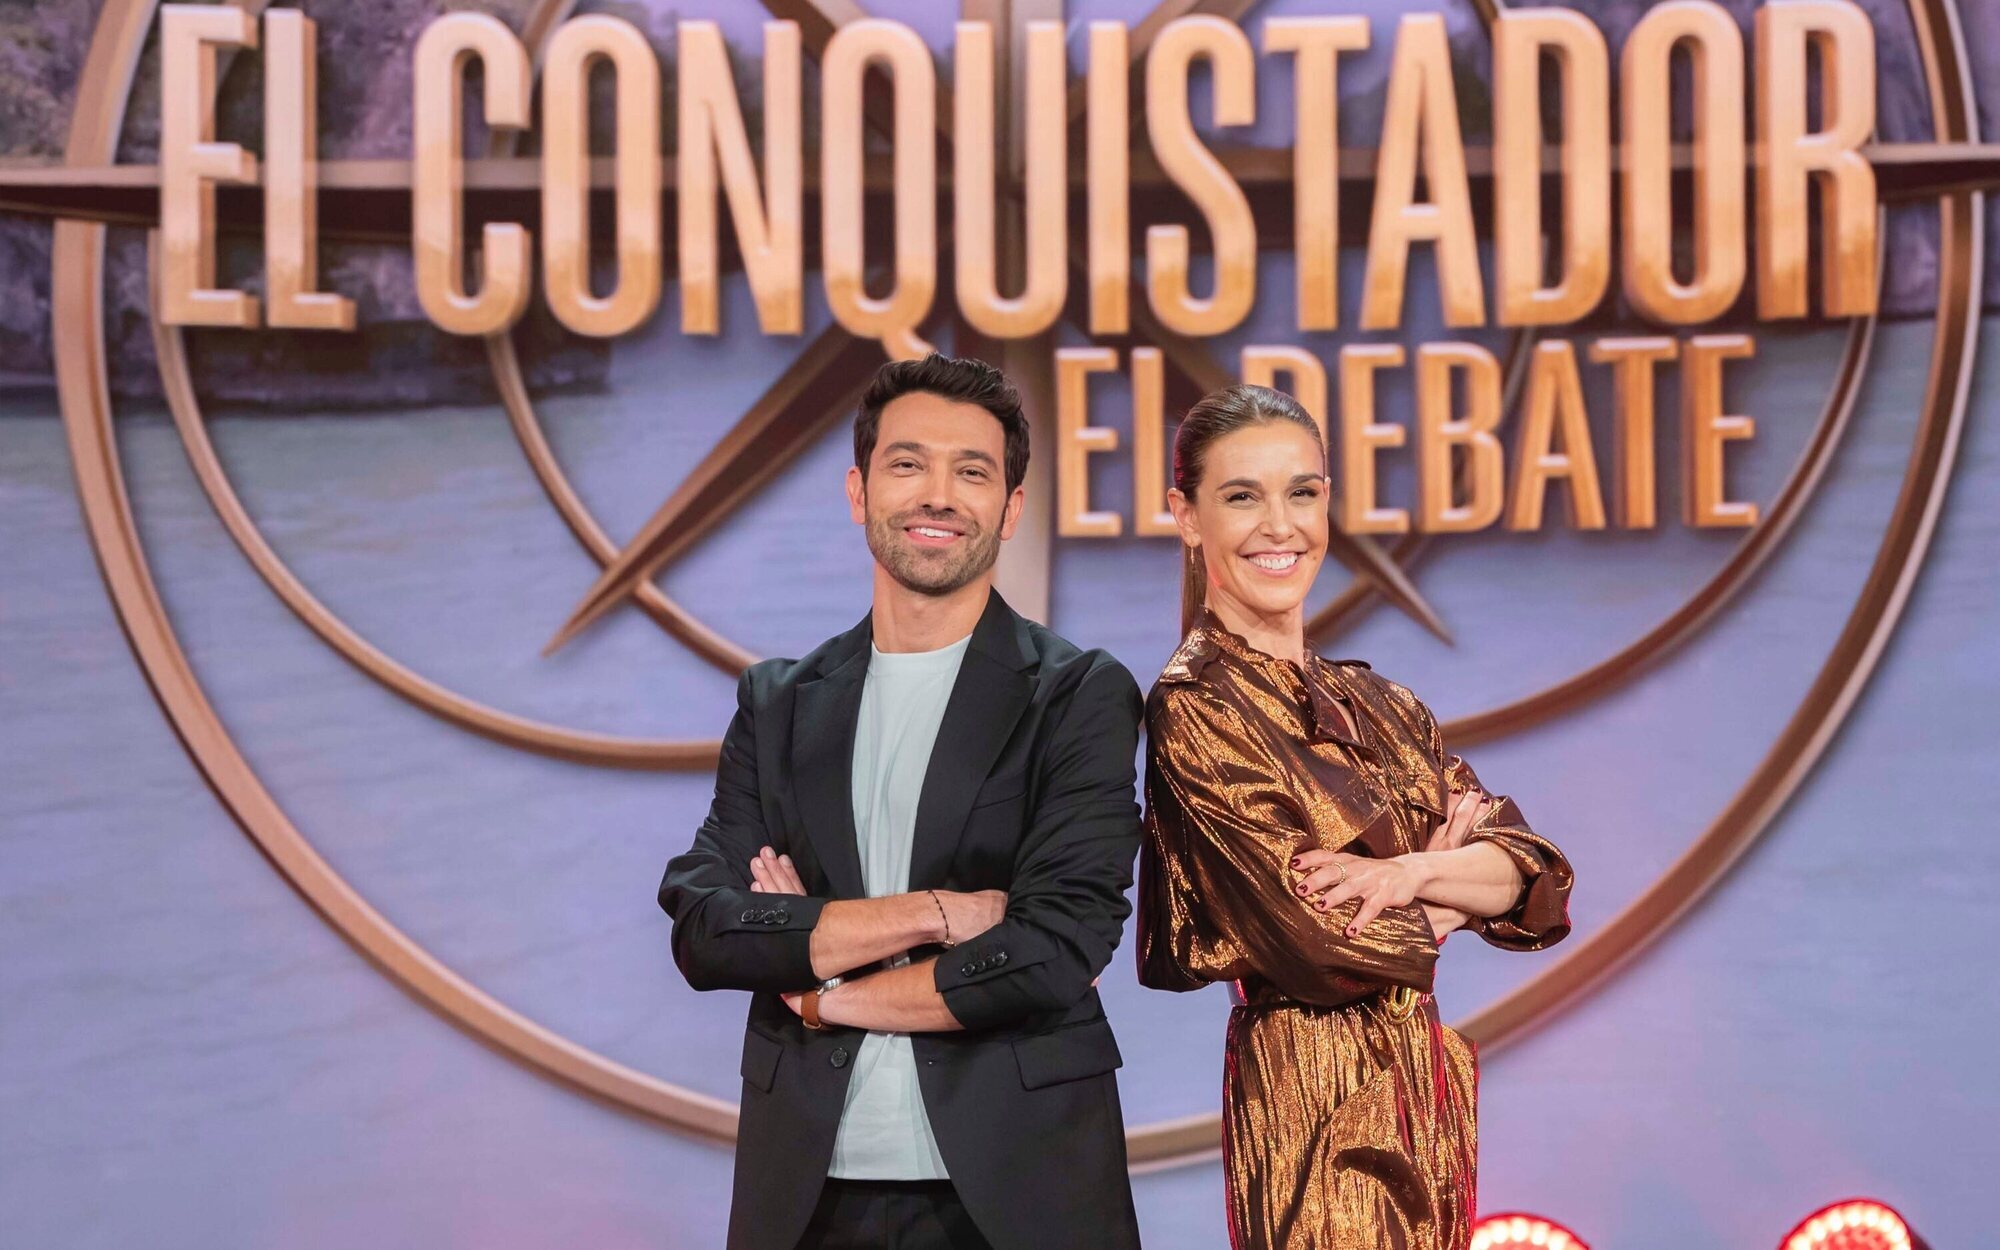 RTVE relega el debate de 'El conquistador' al late night del lunes tras su fracaso en audiencias